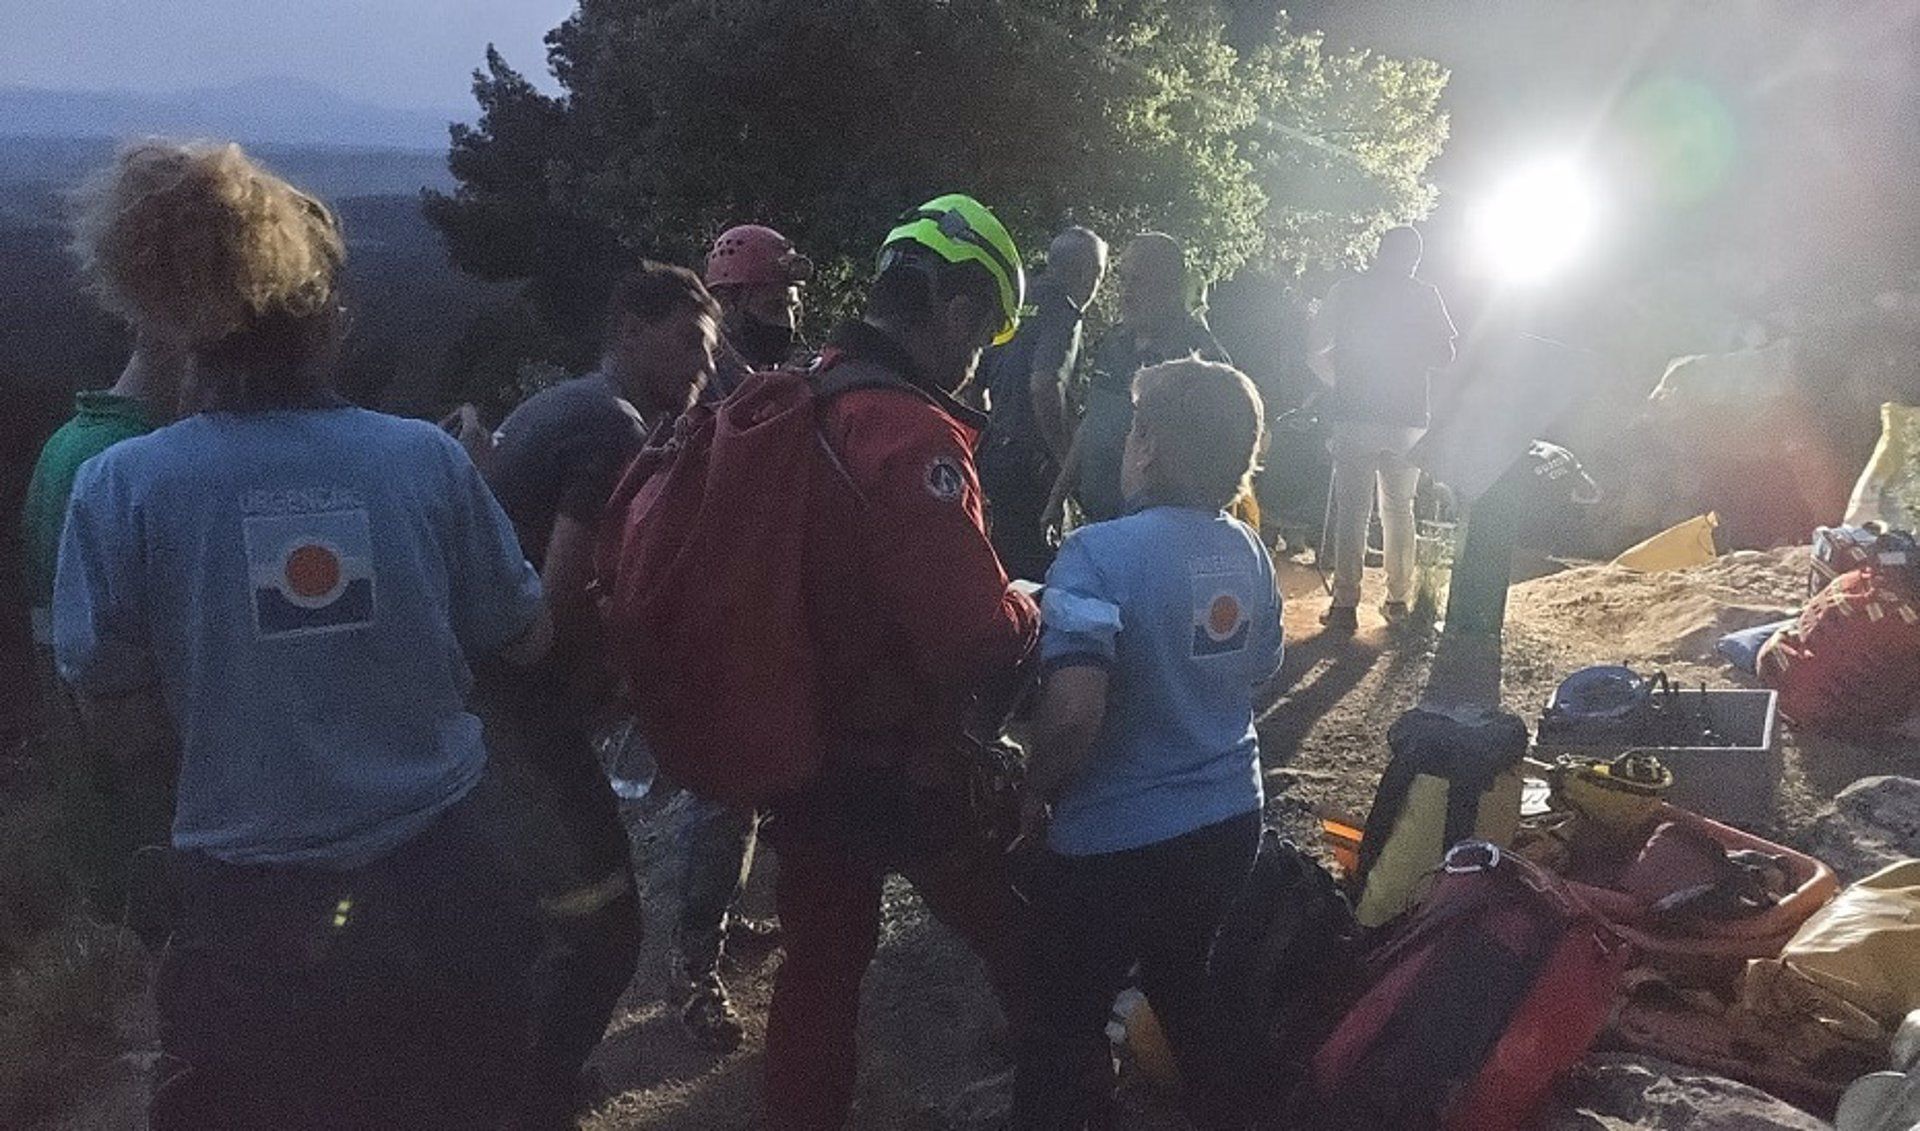 Rescate de una espeleóloga de 60 años herida tras sufrir una caída en una cueva de María en Almería.